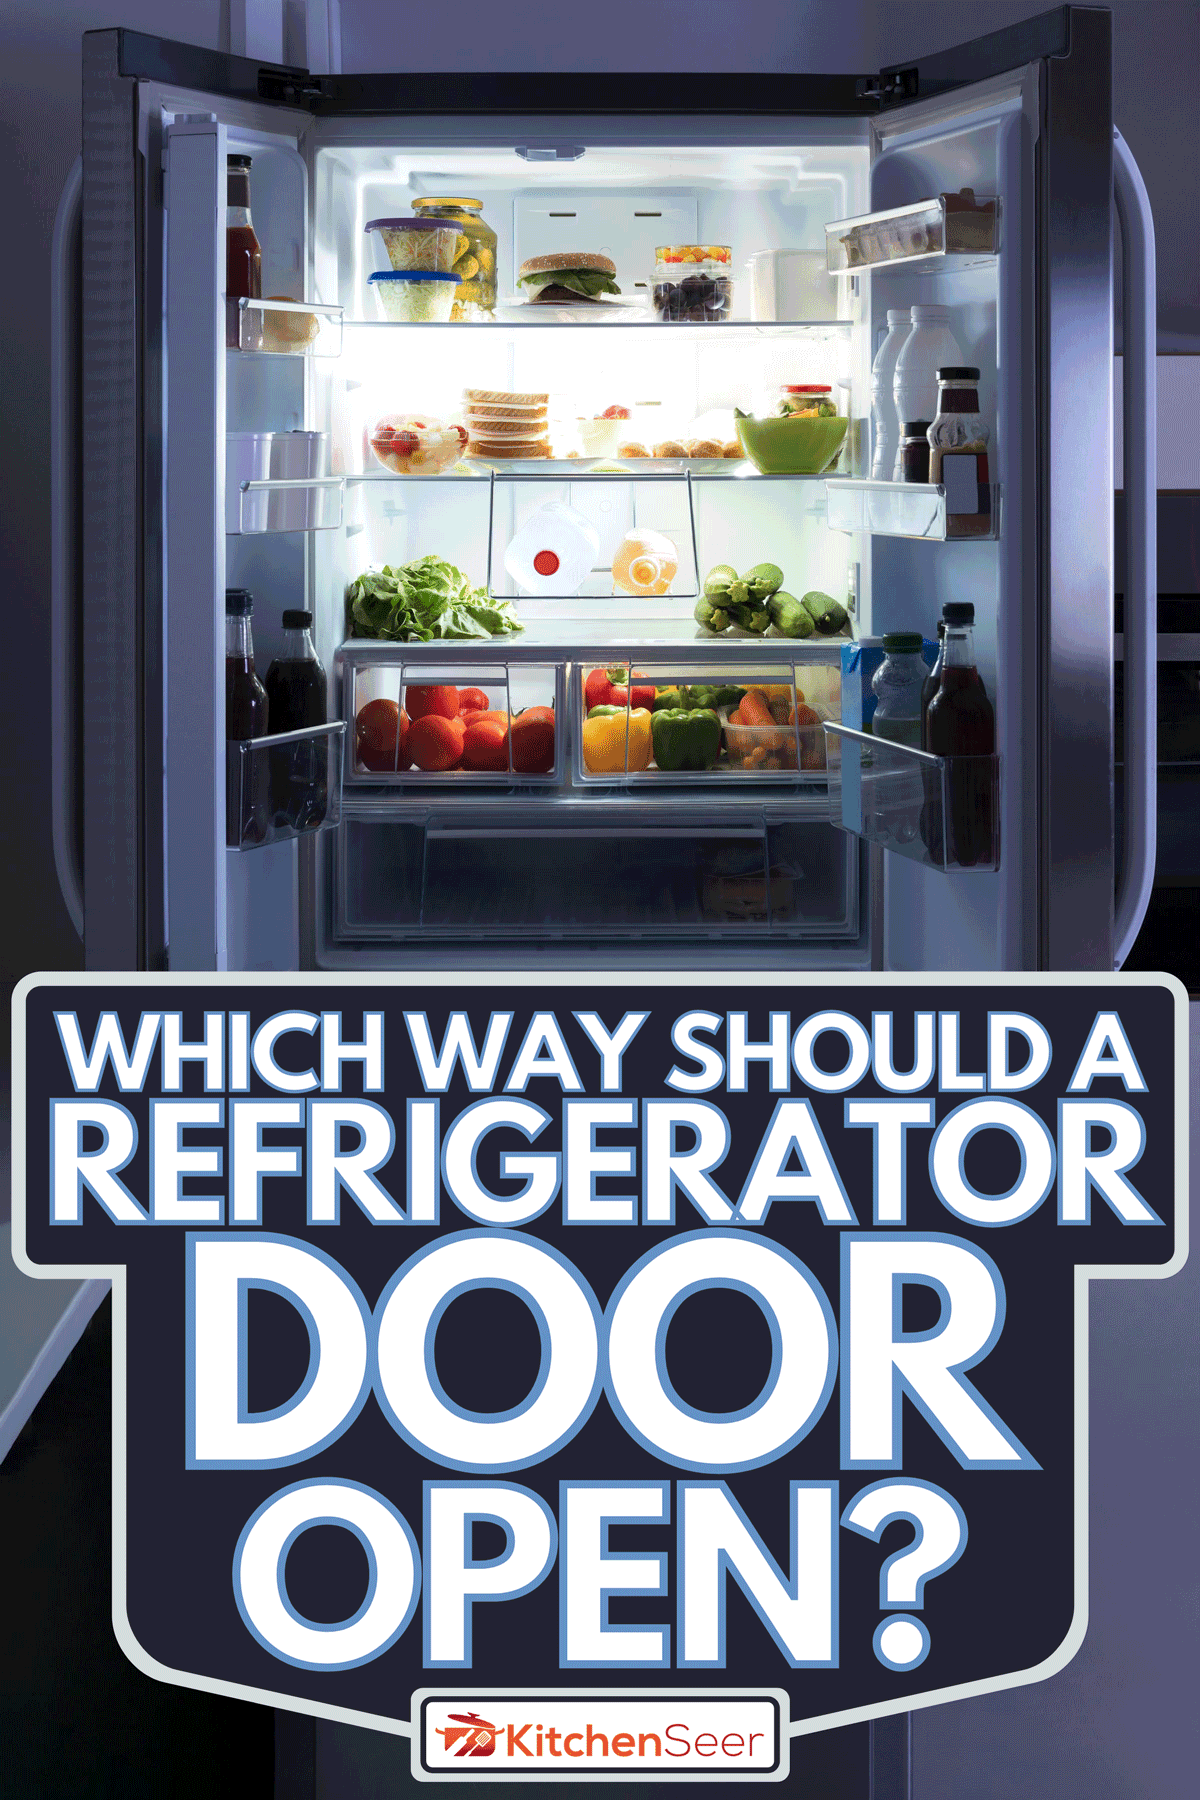 开放的冰箱充满活力和新鲜蔬菜,哪条路应该冰箱开门吗?